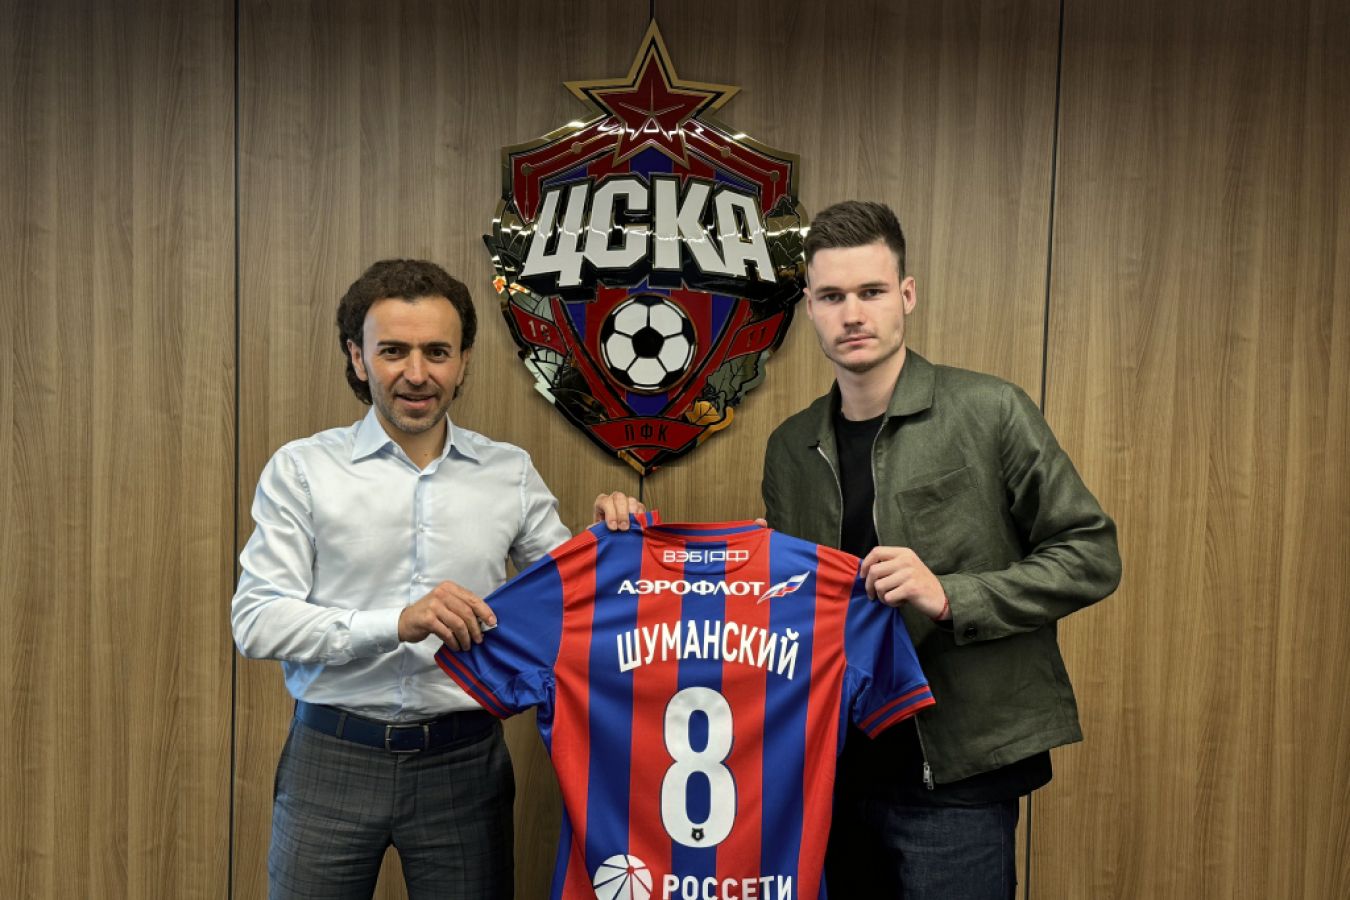 В ЦСКА рассказали, почему было принято решение приобрести форварда Шуманского